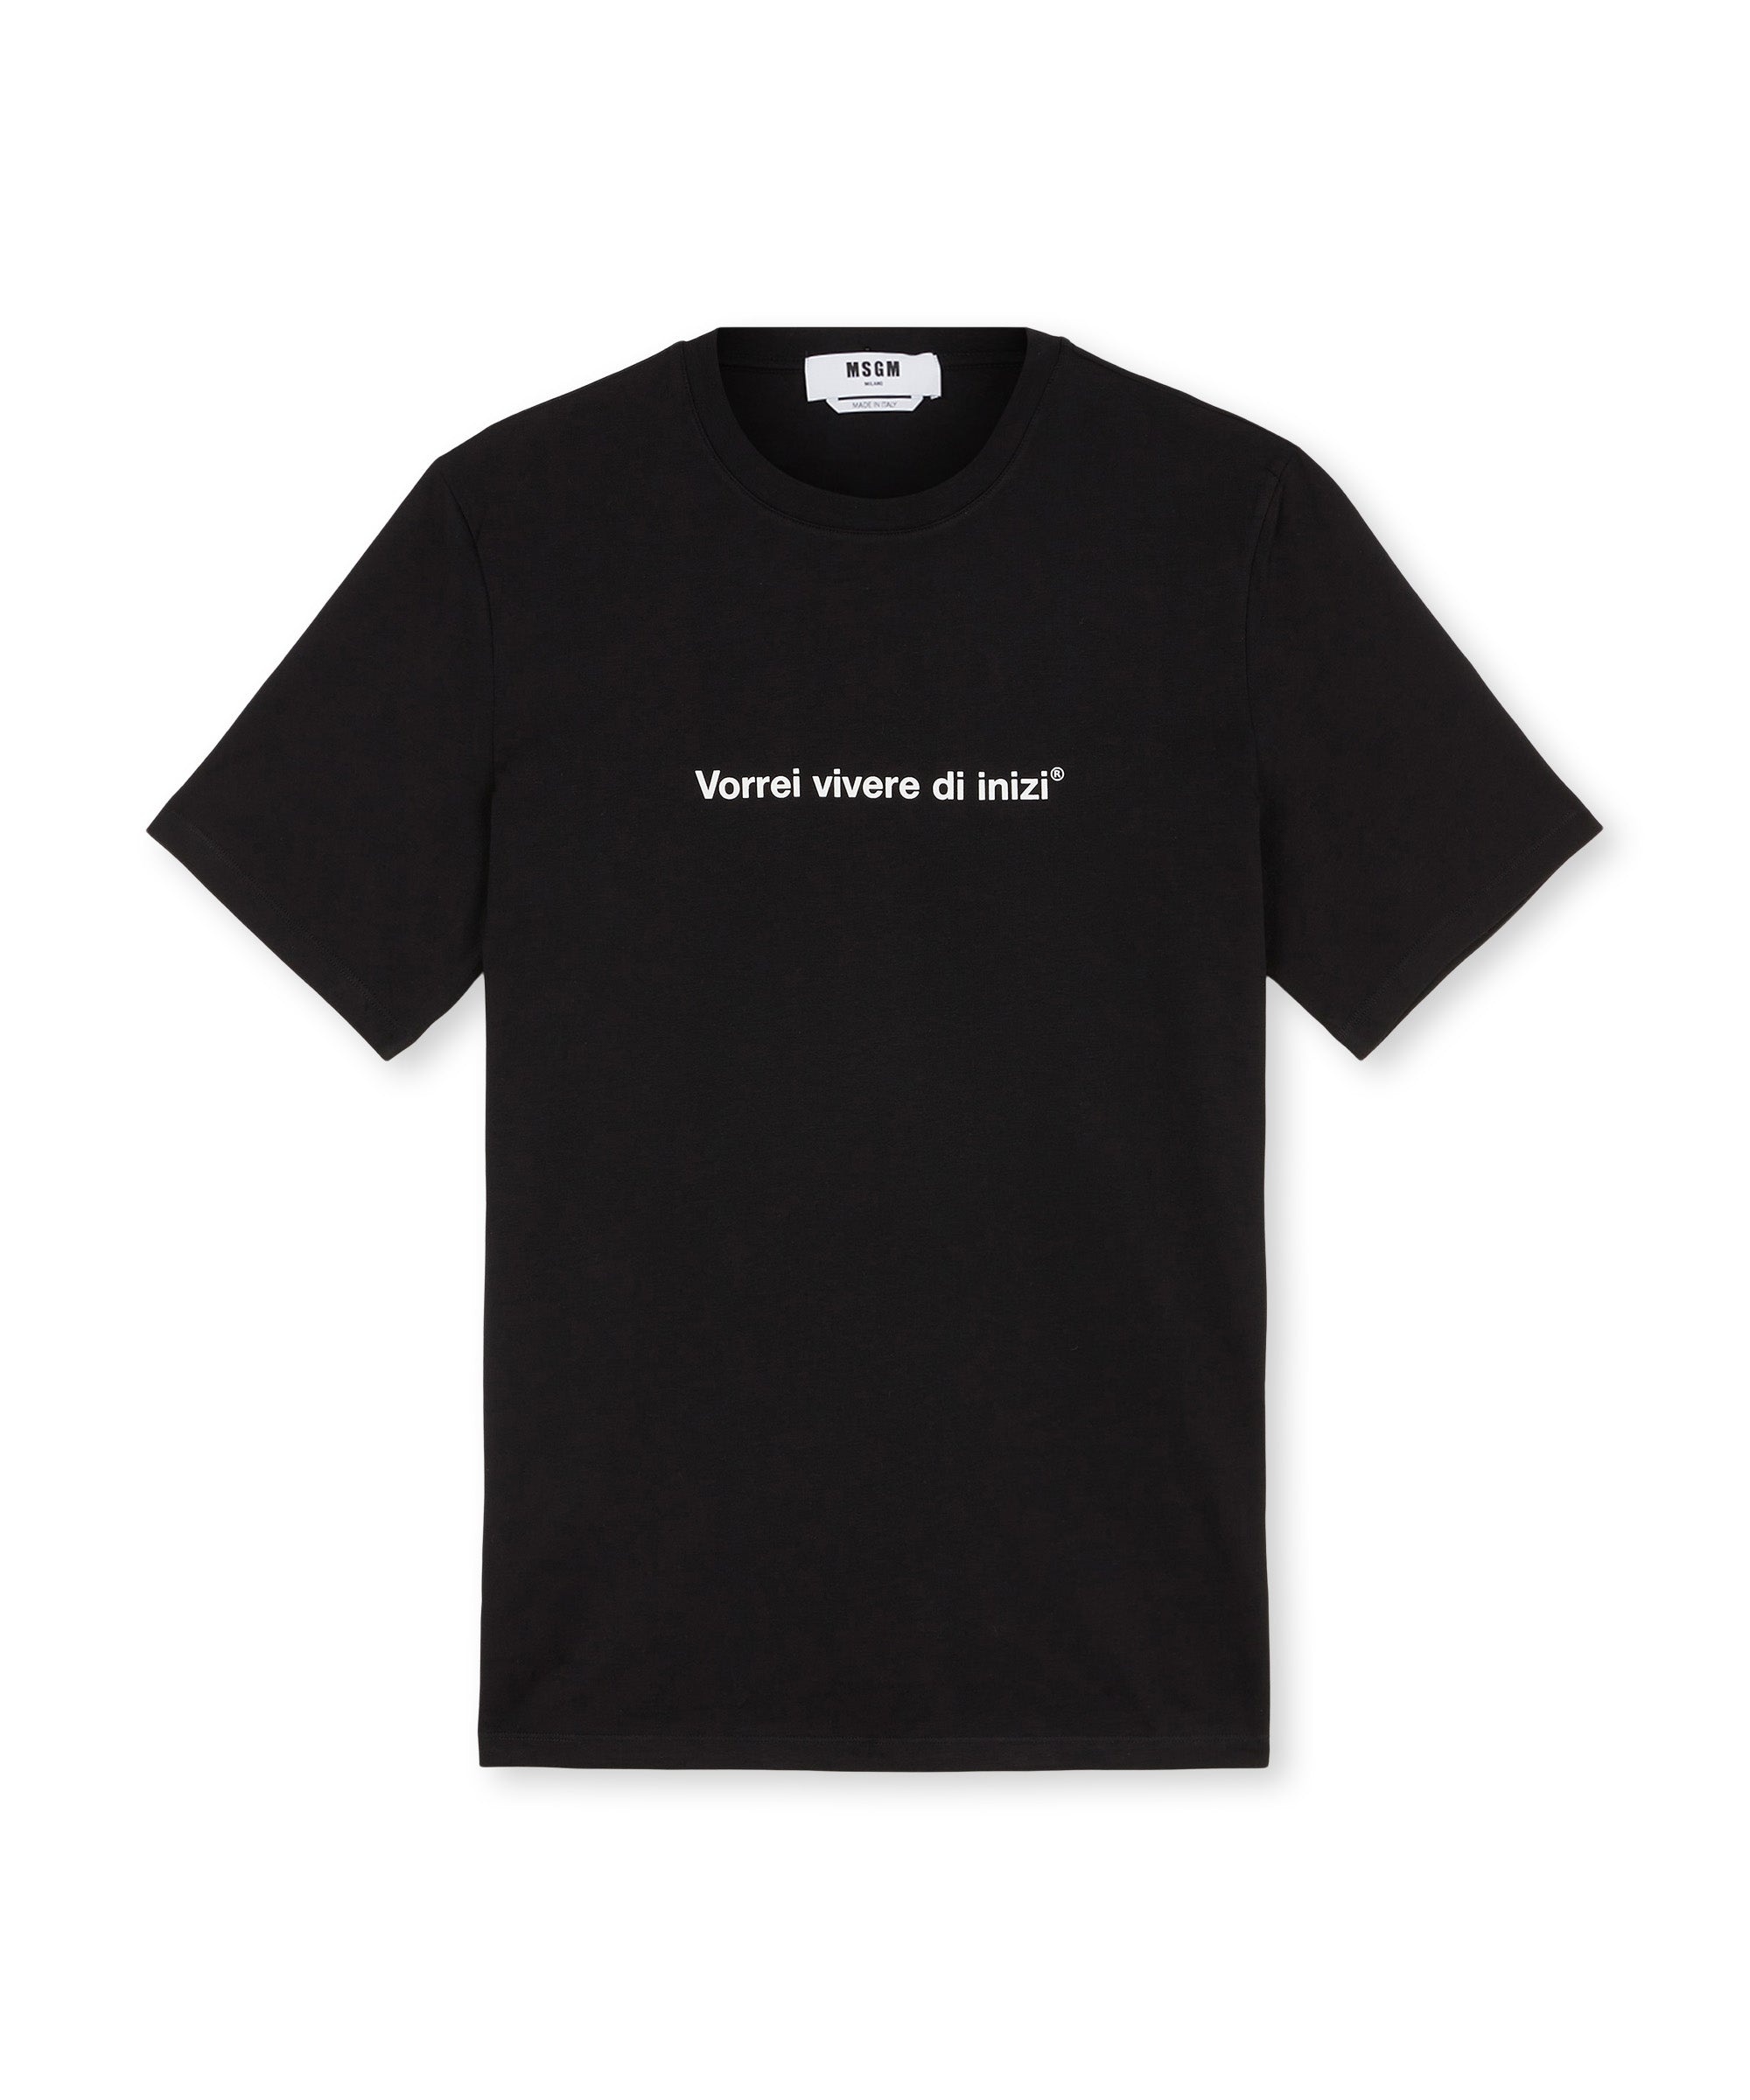 T-shirt quote "Vorrei vivere di inizi" - 3